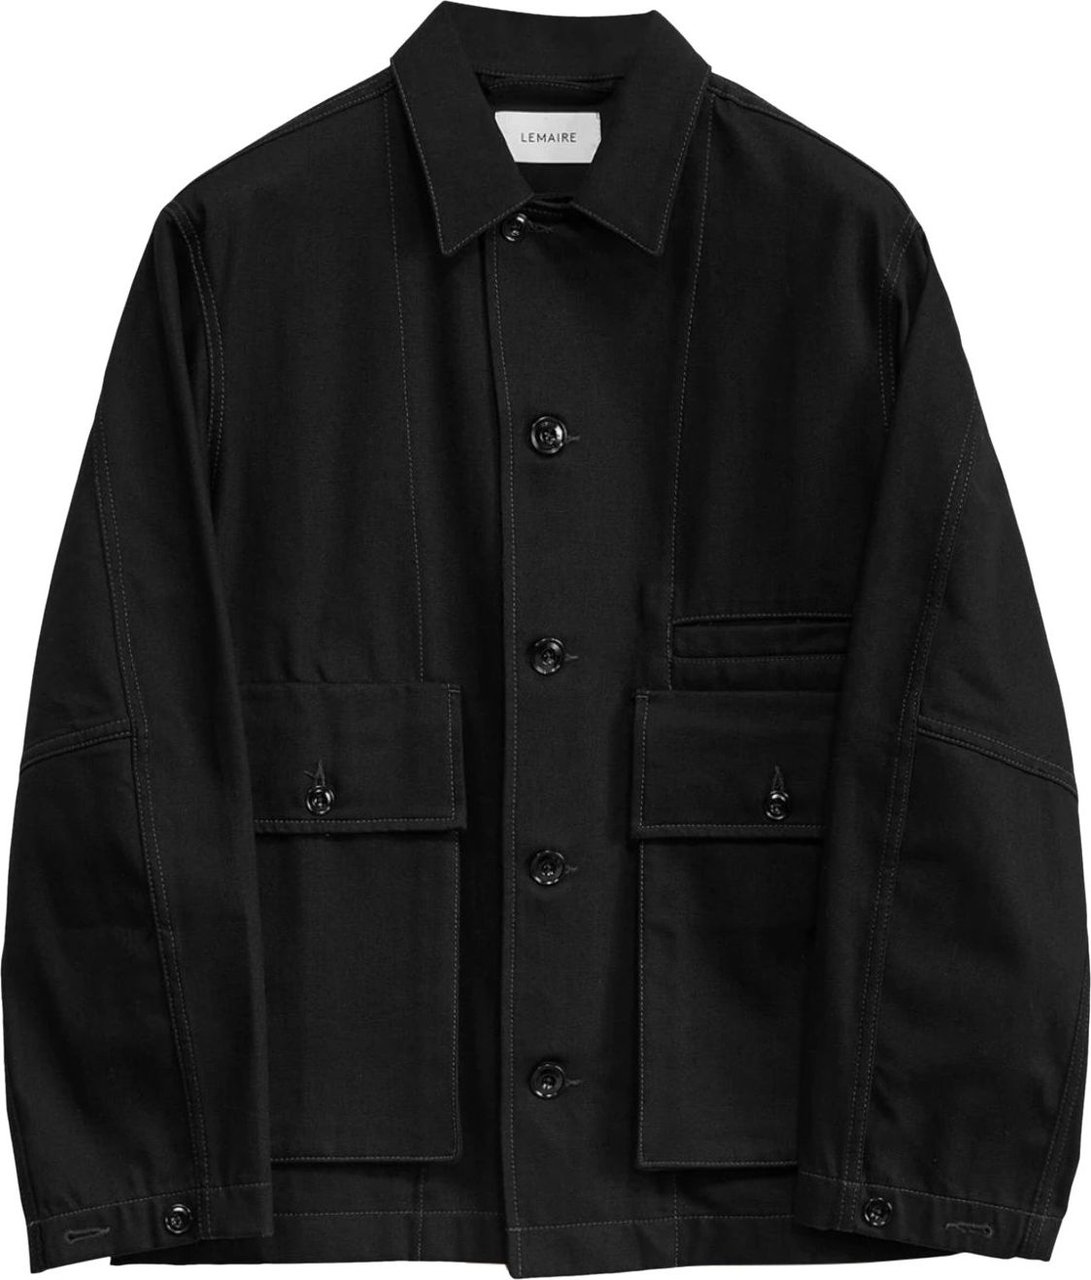 Lemaire Boxy Jacket Black Zwart